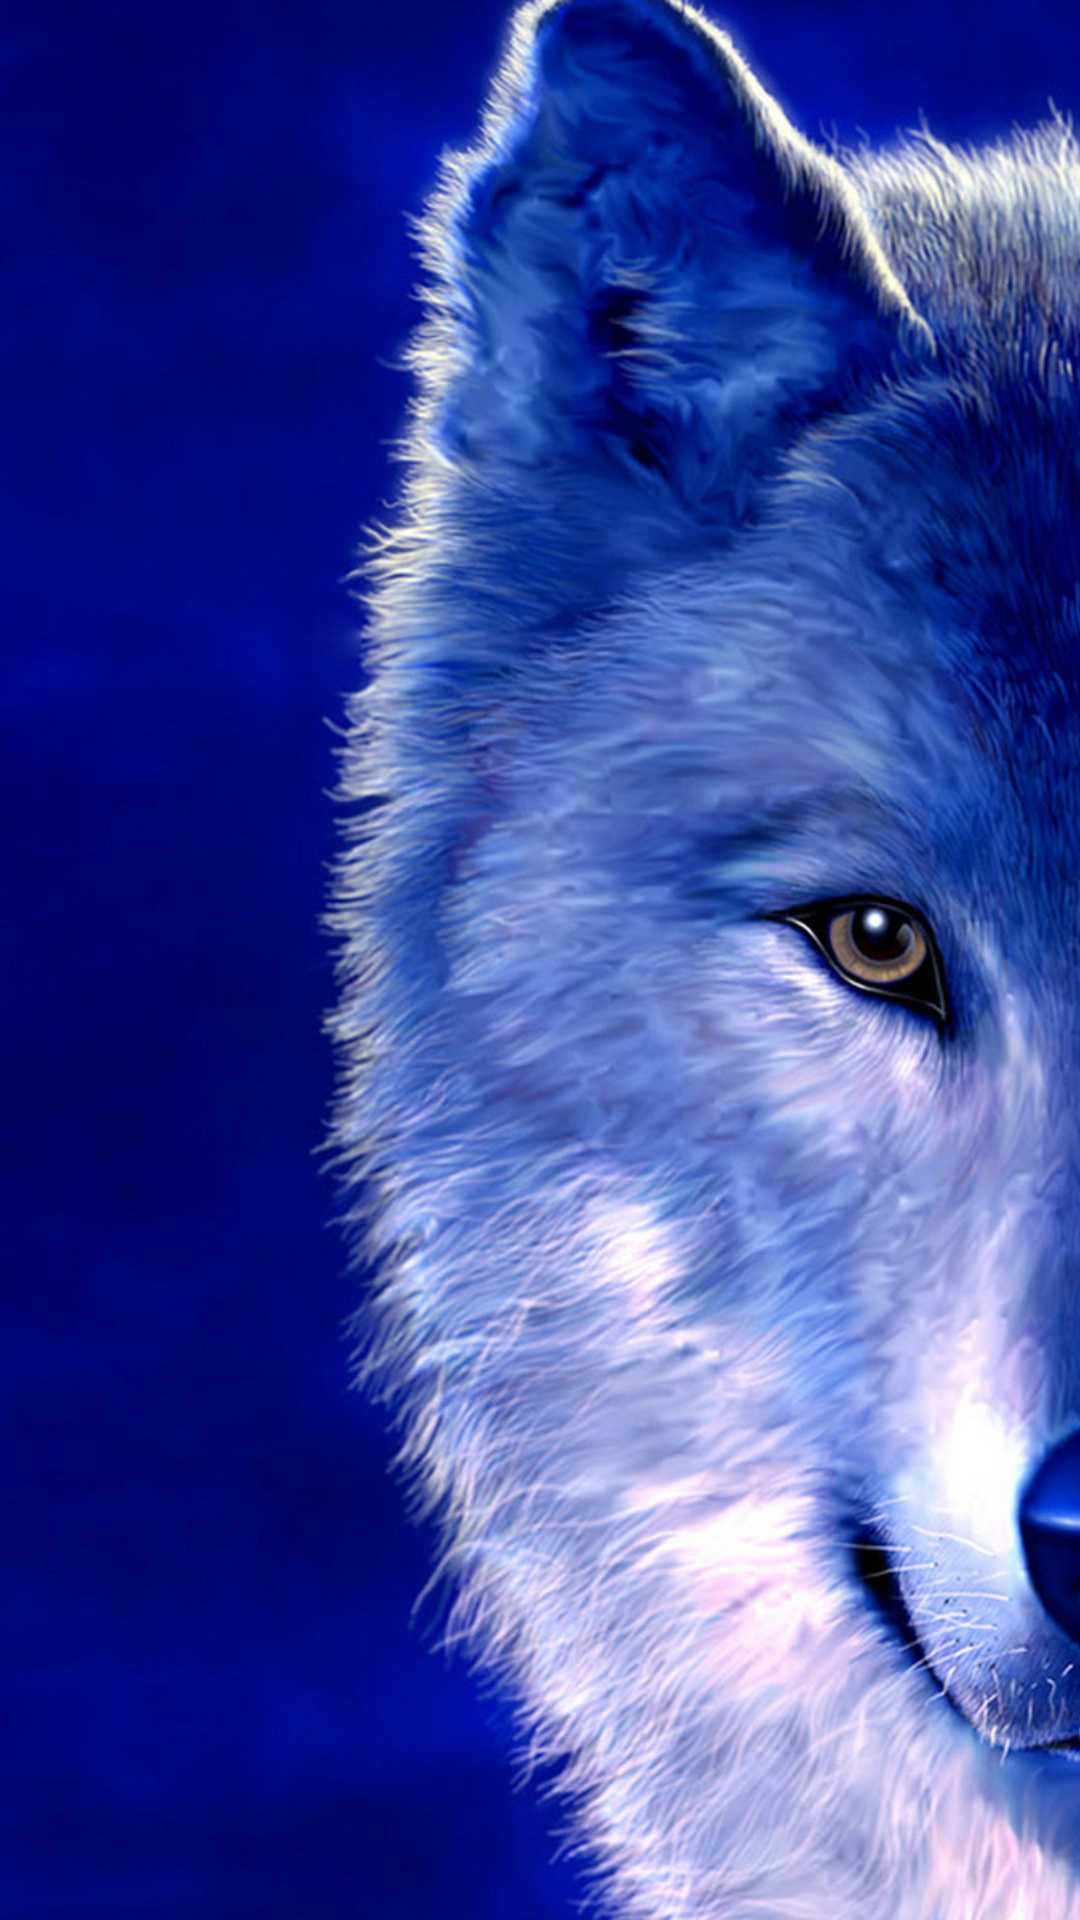 1080p Blue Wolf Wallpaper 1